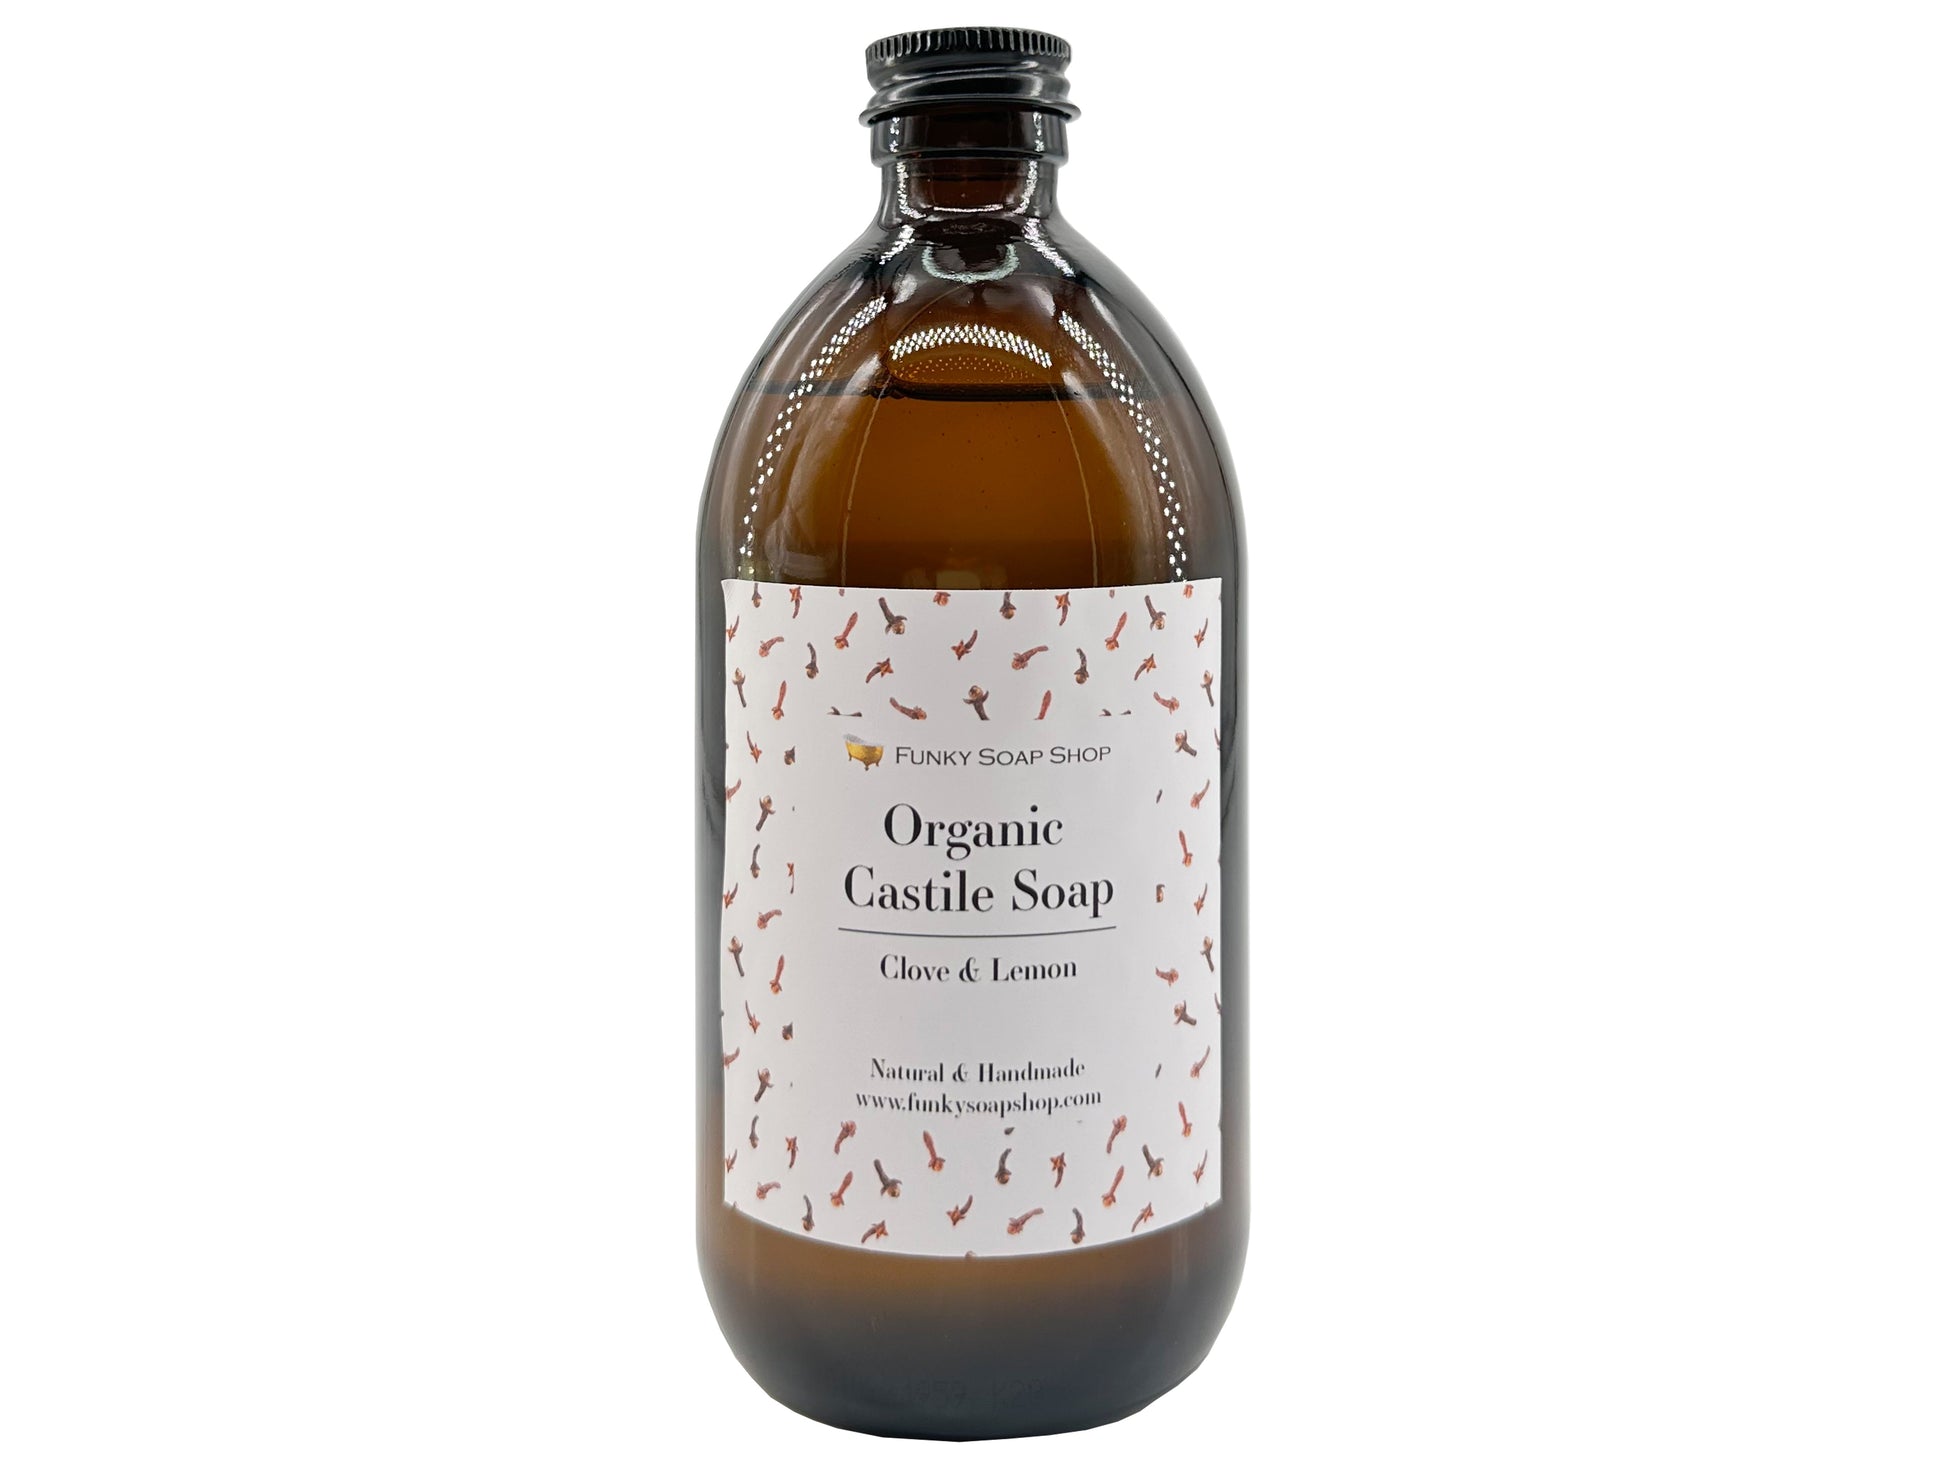 Organic Liquid Castile Soap with Clove & Lemon, Glass Bottle - Funky Soap Shop